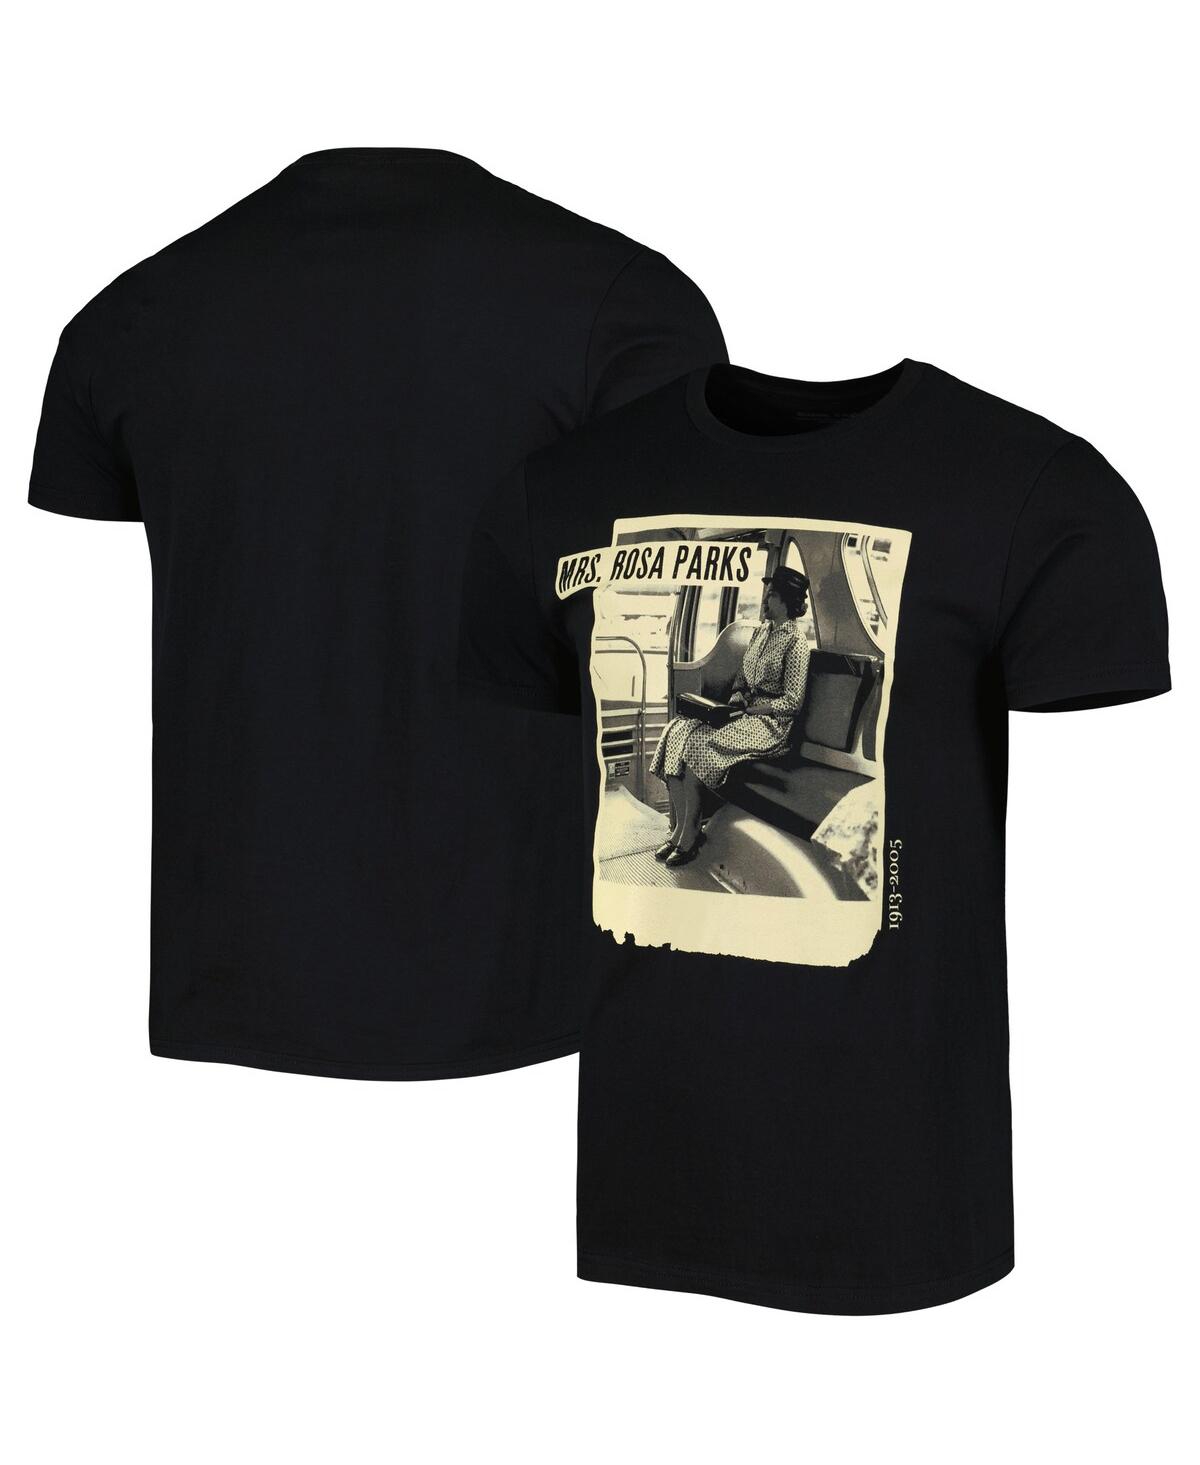 Philcos Men's And Women's Black Rosa Parks Graphic T-shirt